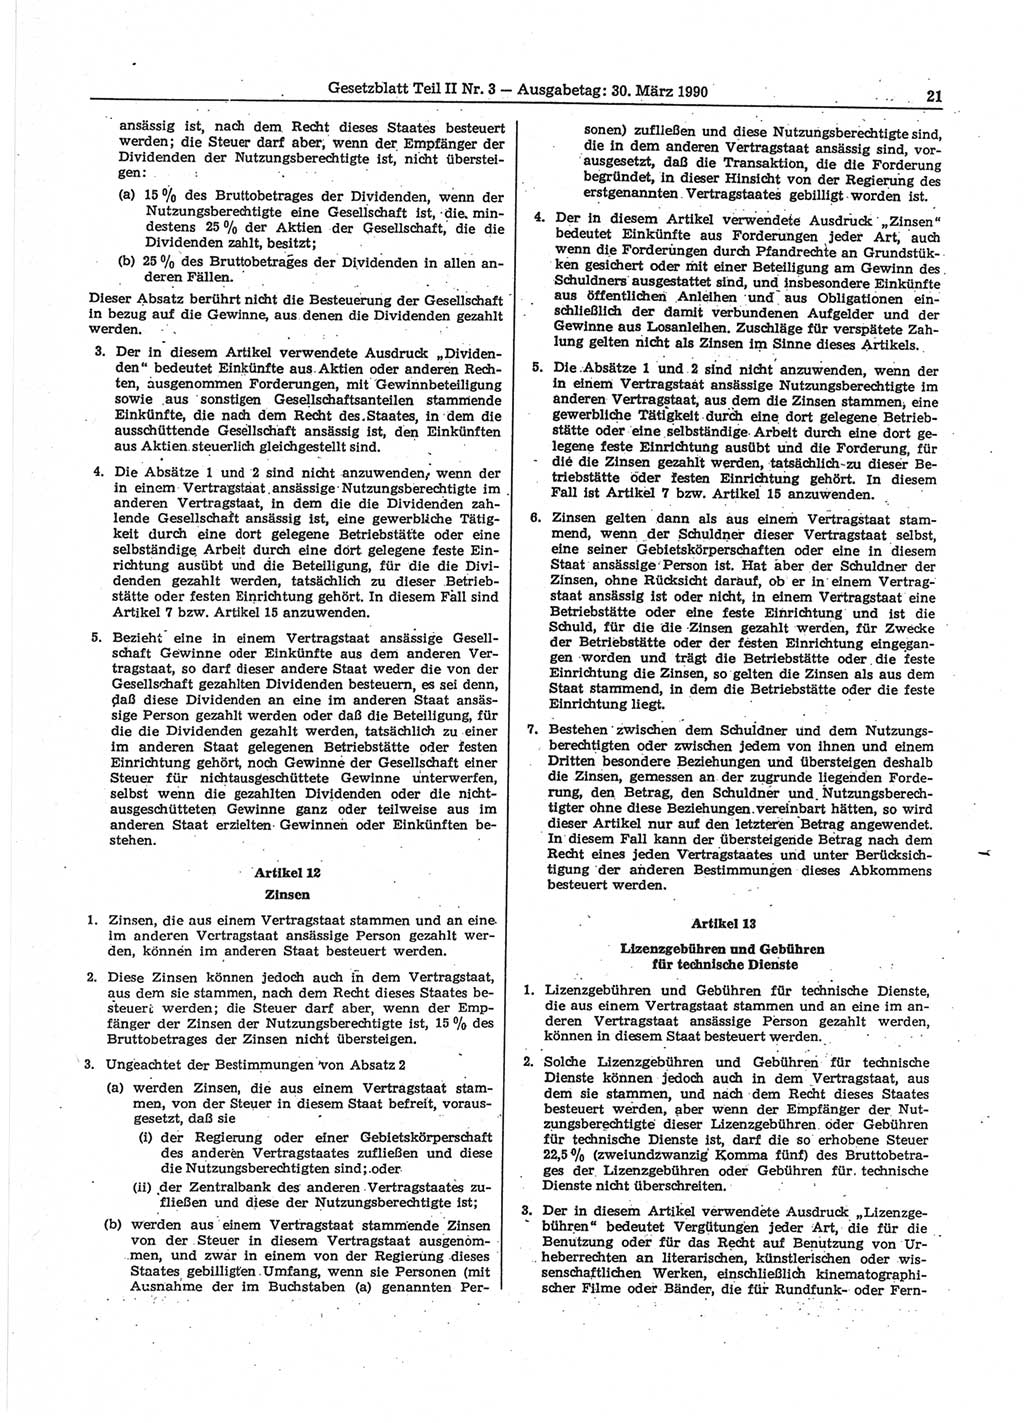 Gesetzblatt (GBl.) der Deutschen Demokratischen Republik (DDR) Teil ⅠⅠ 1990, Seite 21 (GBl. DDR ⅠⅠ 1990, S. 21)